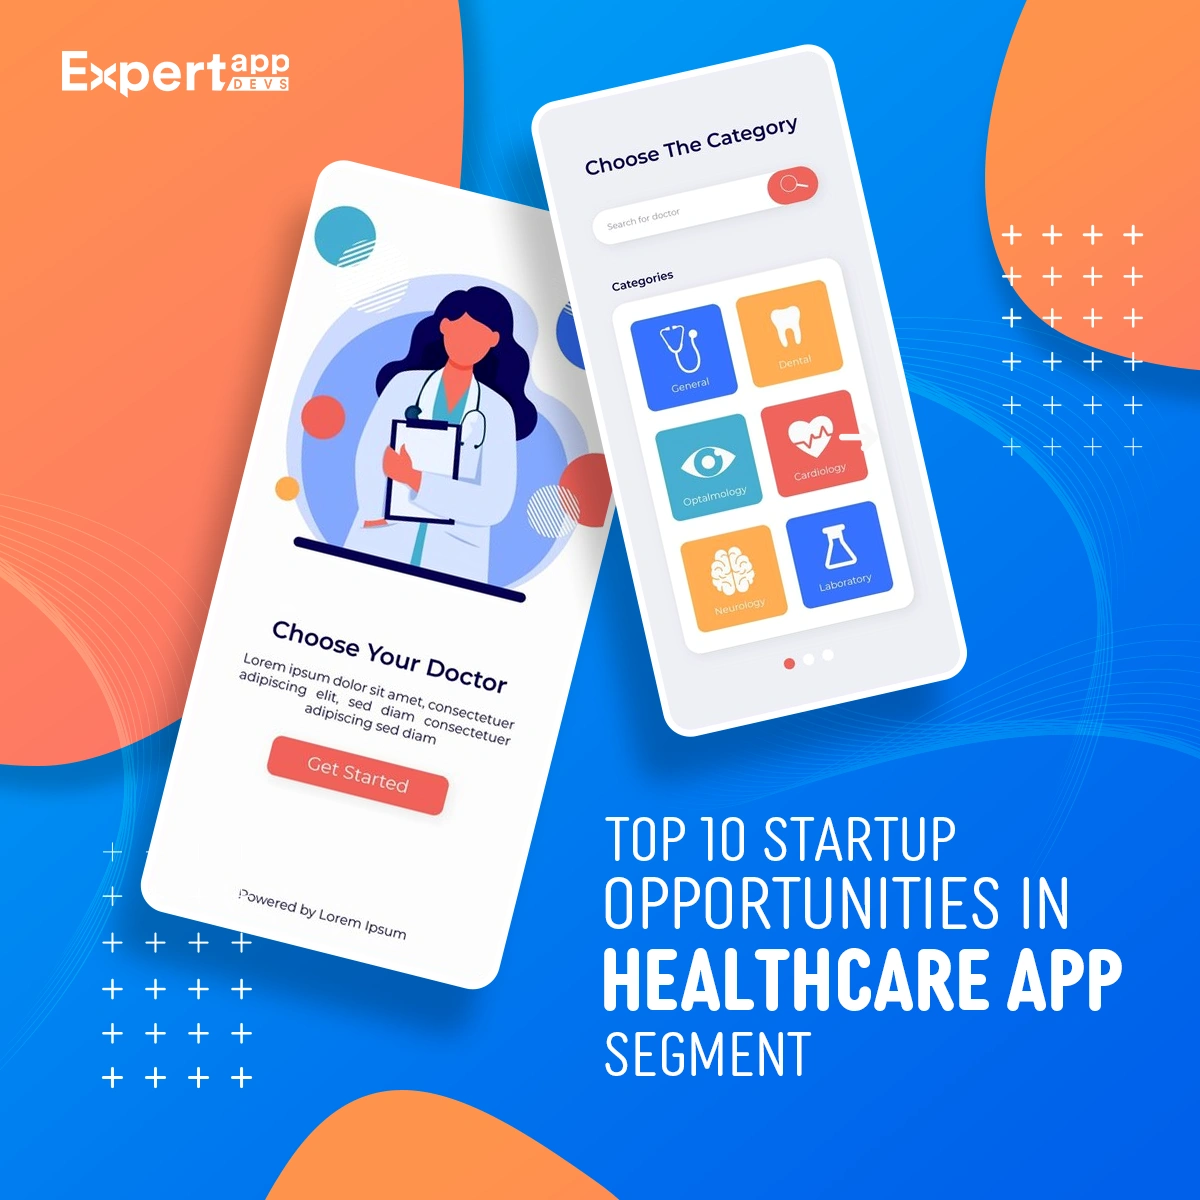 Top 10 Startup Opportunities in Healthcare